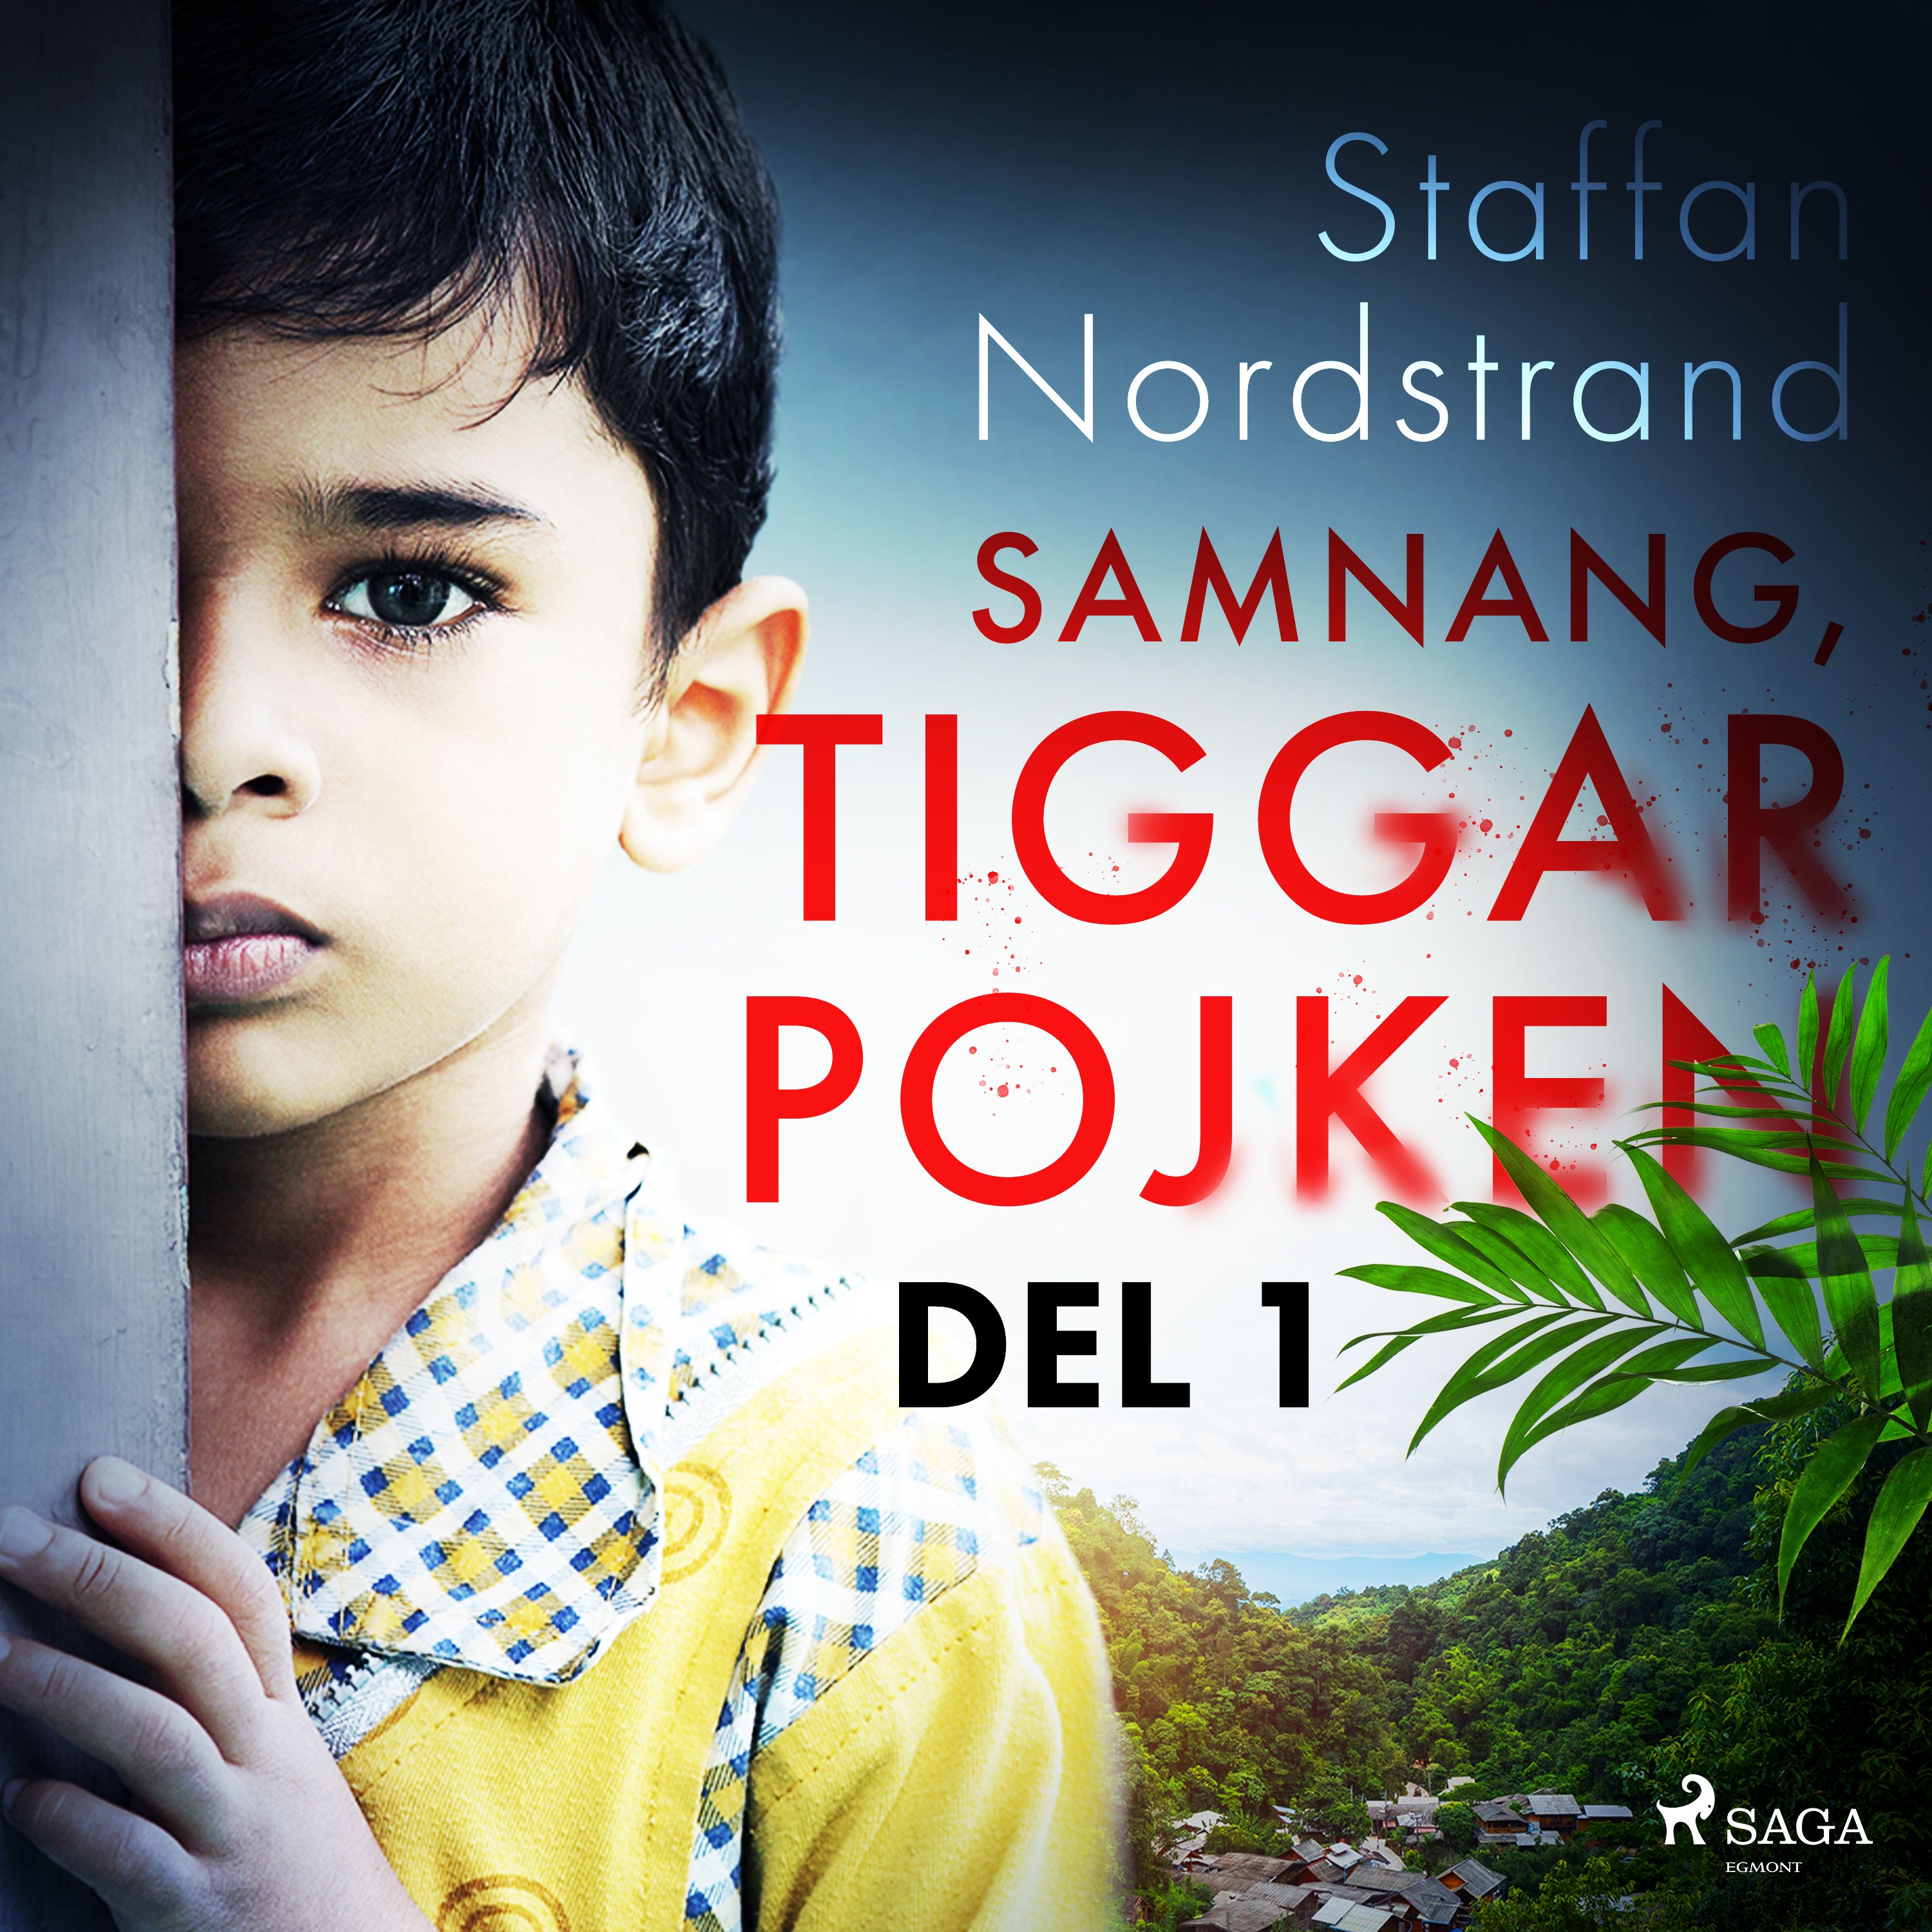 Samnang, tiggarpojken - del 1, audiobook by Staffan Nordstrand